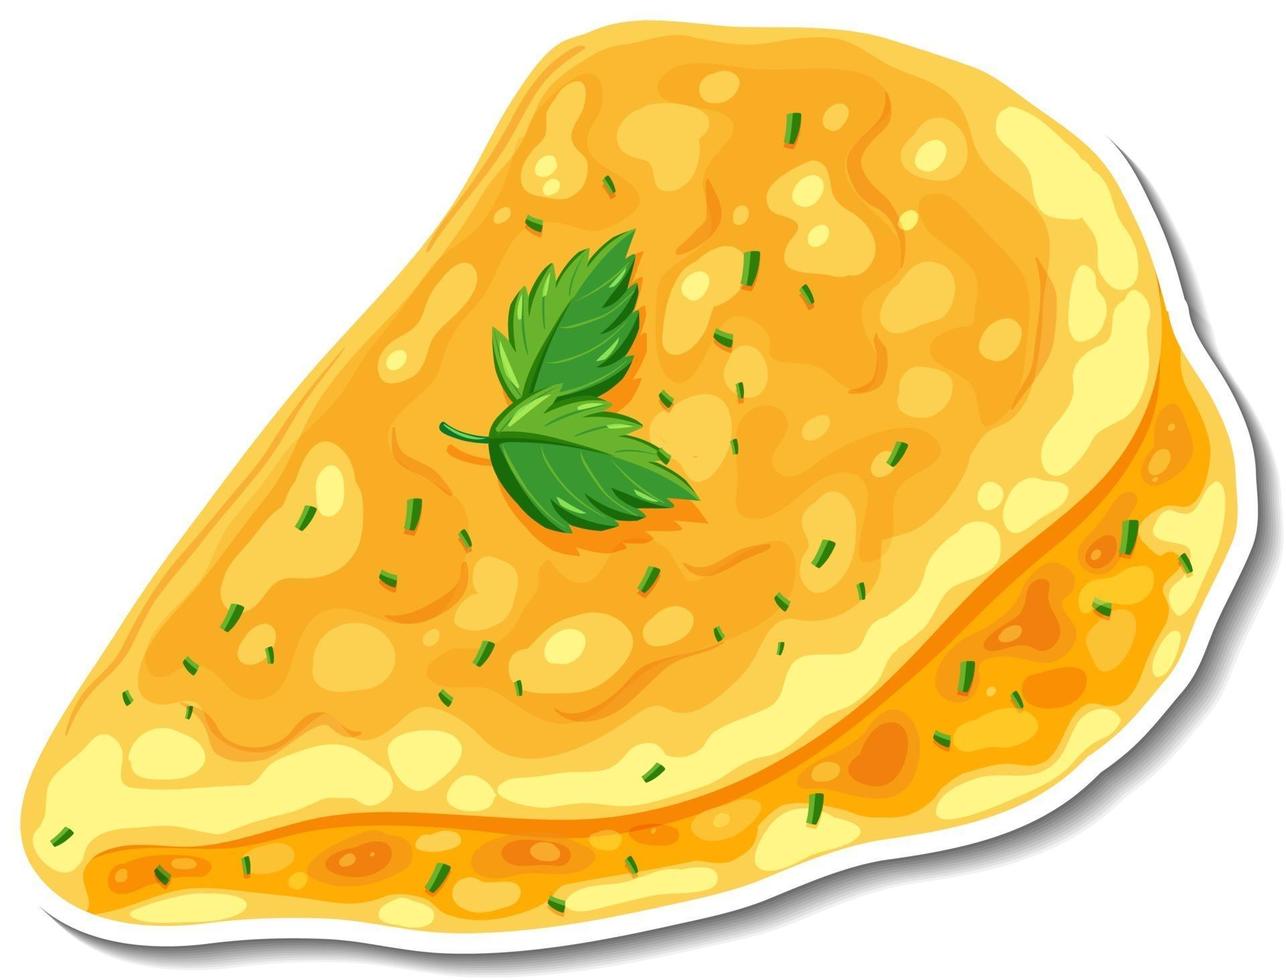 Omelette sticker on white background vector